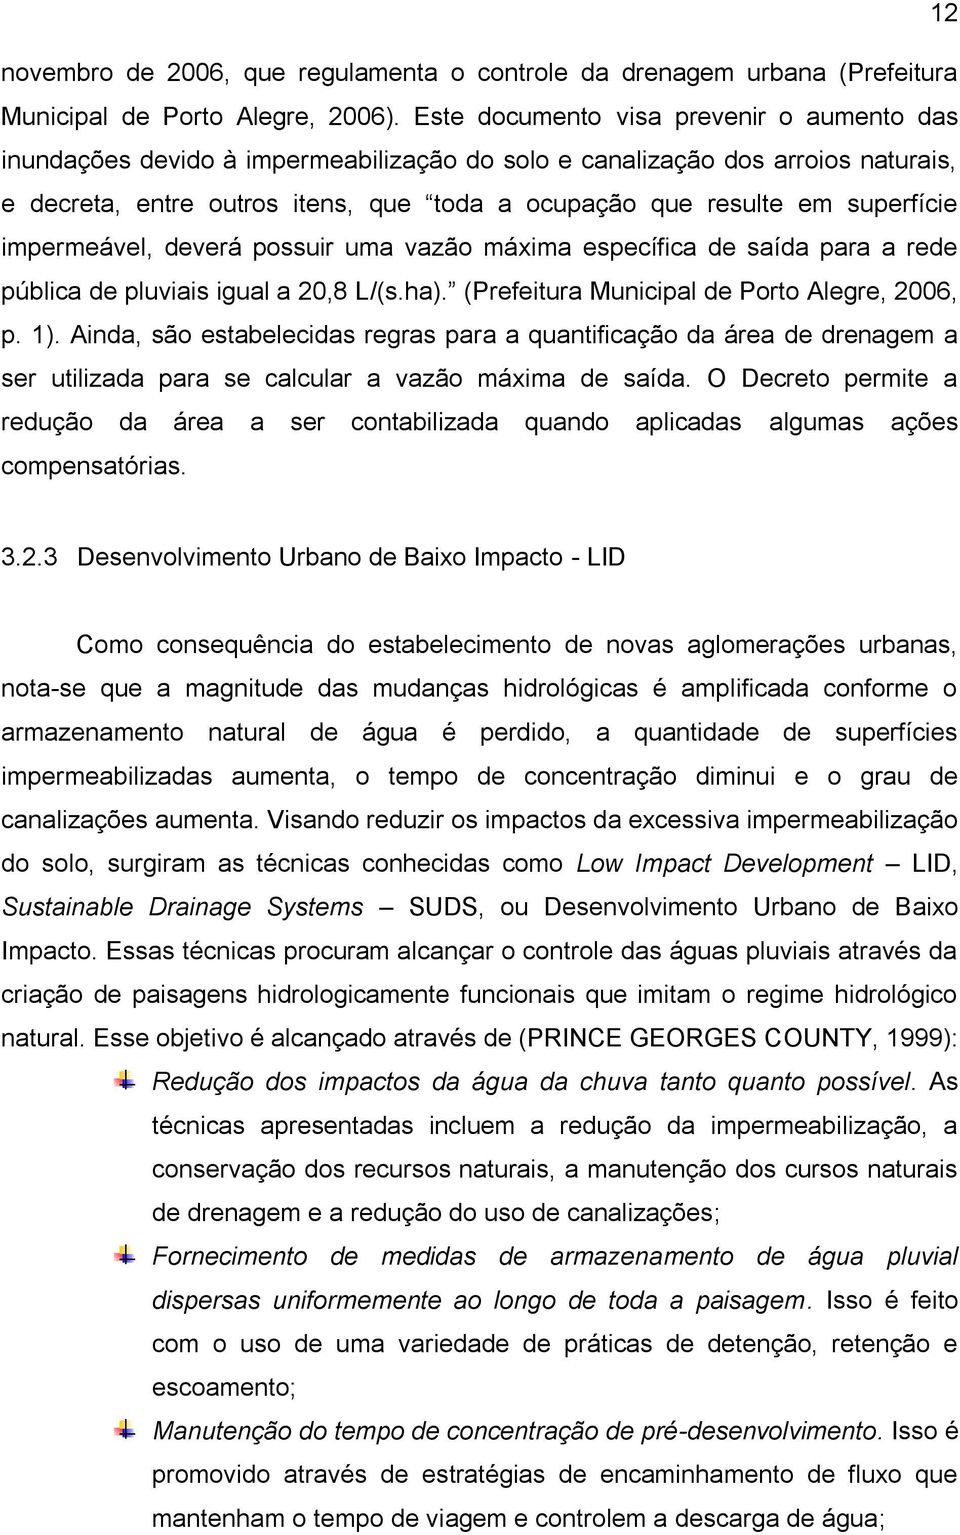 superfície impermeável, deverá possuir uma vazão máxima específica de saída para a rede pública de pluviais igual a 20,8 L/(s.ha). (Prefeitura Municipal de Porto Alegre, 2006, p. 1).